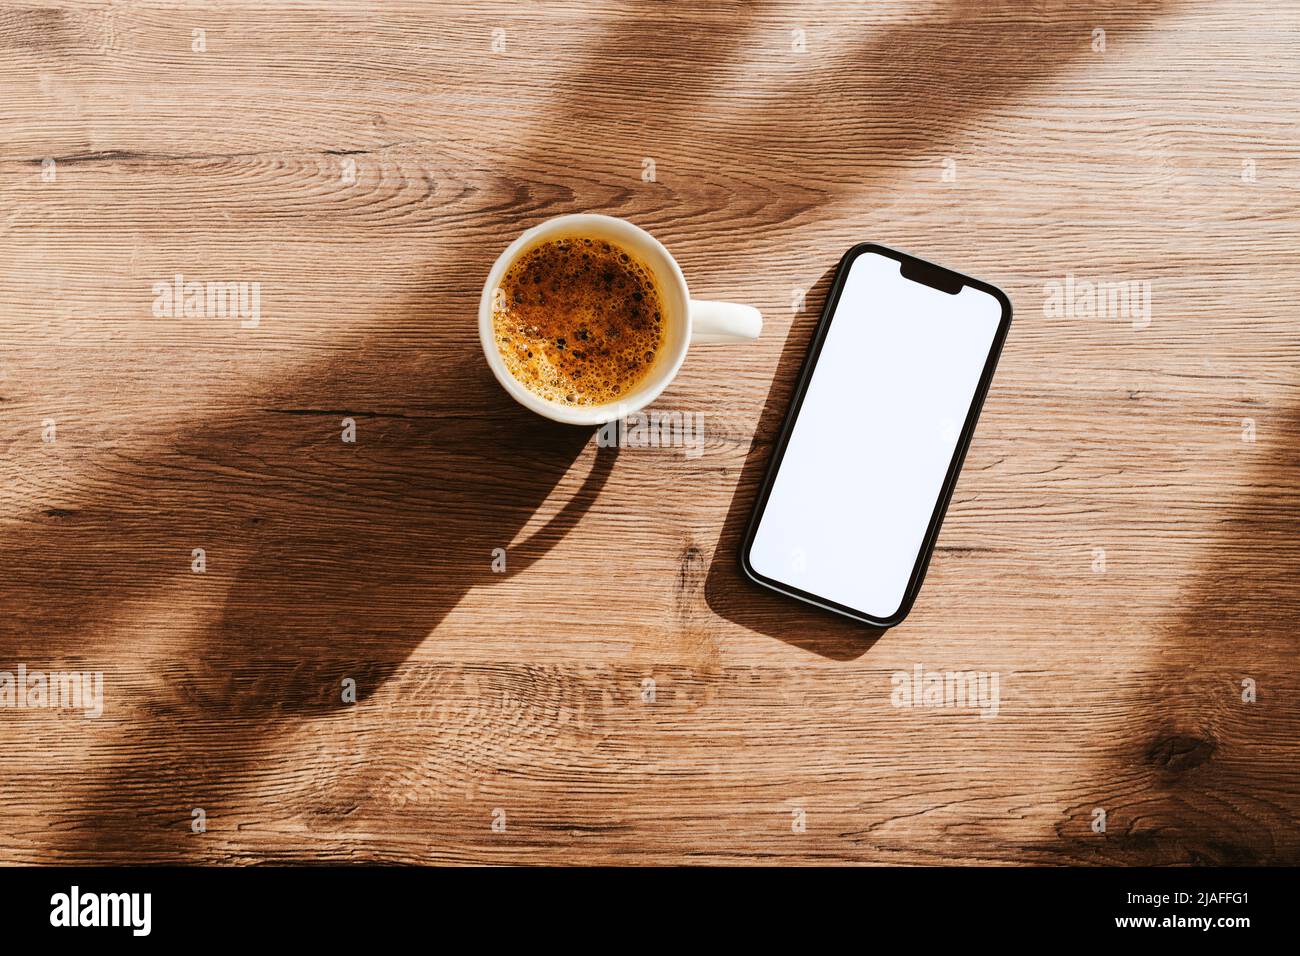 Tazza di caffè e smartphone con schermo bianco bianco bianco bianco per mockup sulla scrivania dell'ufficio domestico, con vista dall'alto Foto Stock